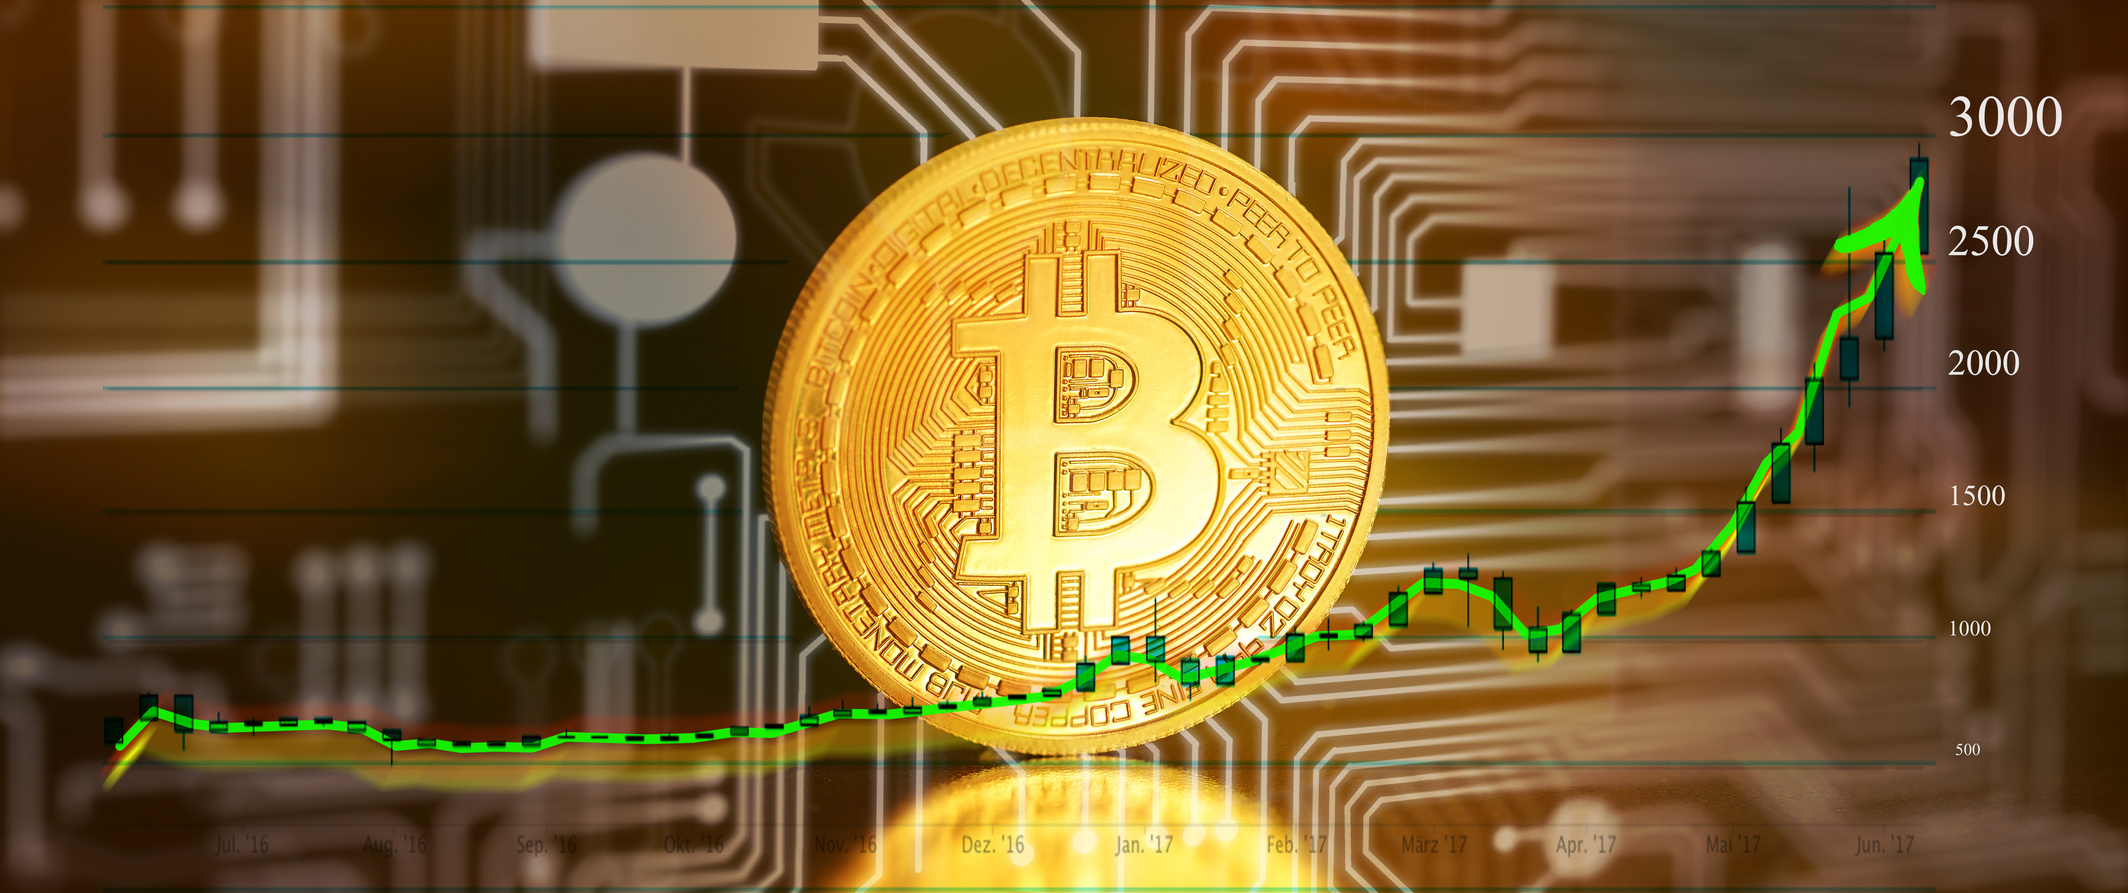 wie viel kann man in bitcoin investieren wie viel mindestens in bitcoin investieren